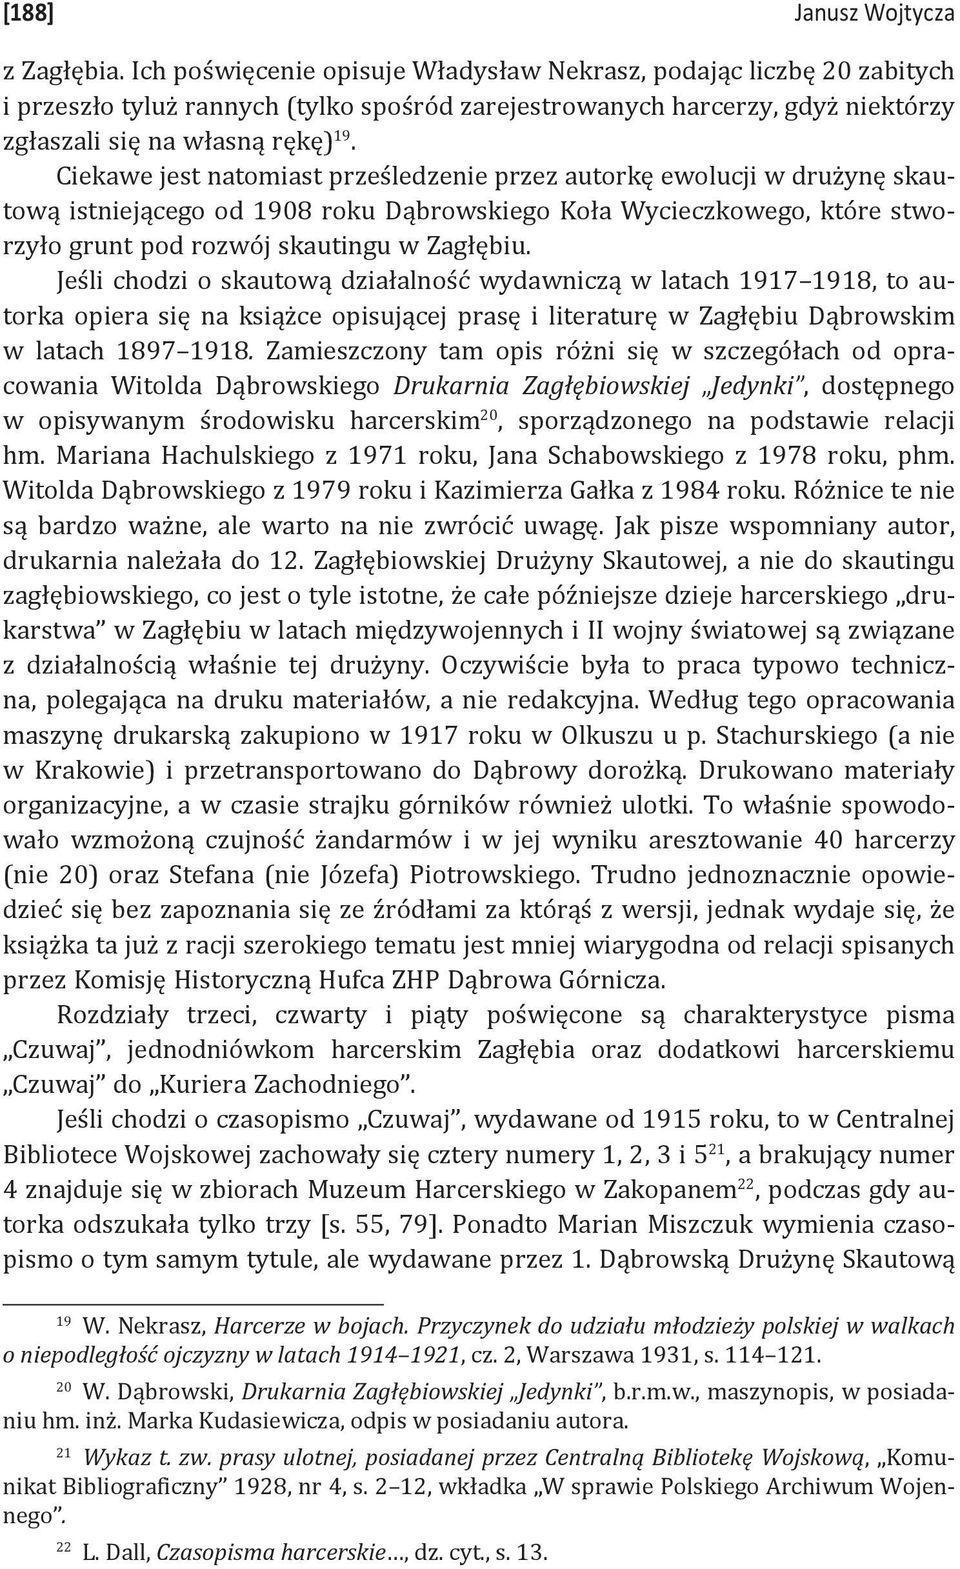 Ciekawe jest natomiast prześledzenie przez autorkę ewolucji w drużynę skautową istniejącego od 1908 roku Dąbrowskiego Koła Wycieczkowego, które stworzyło grunt pod rozwój skautingu w Zagłębiu.